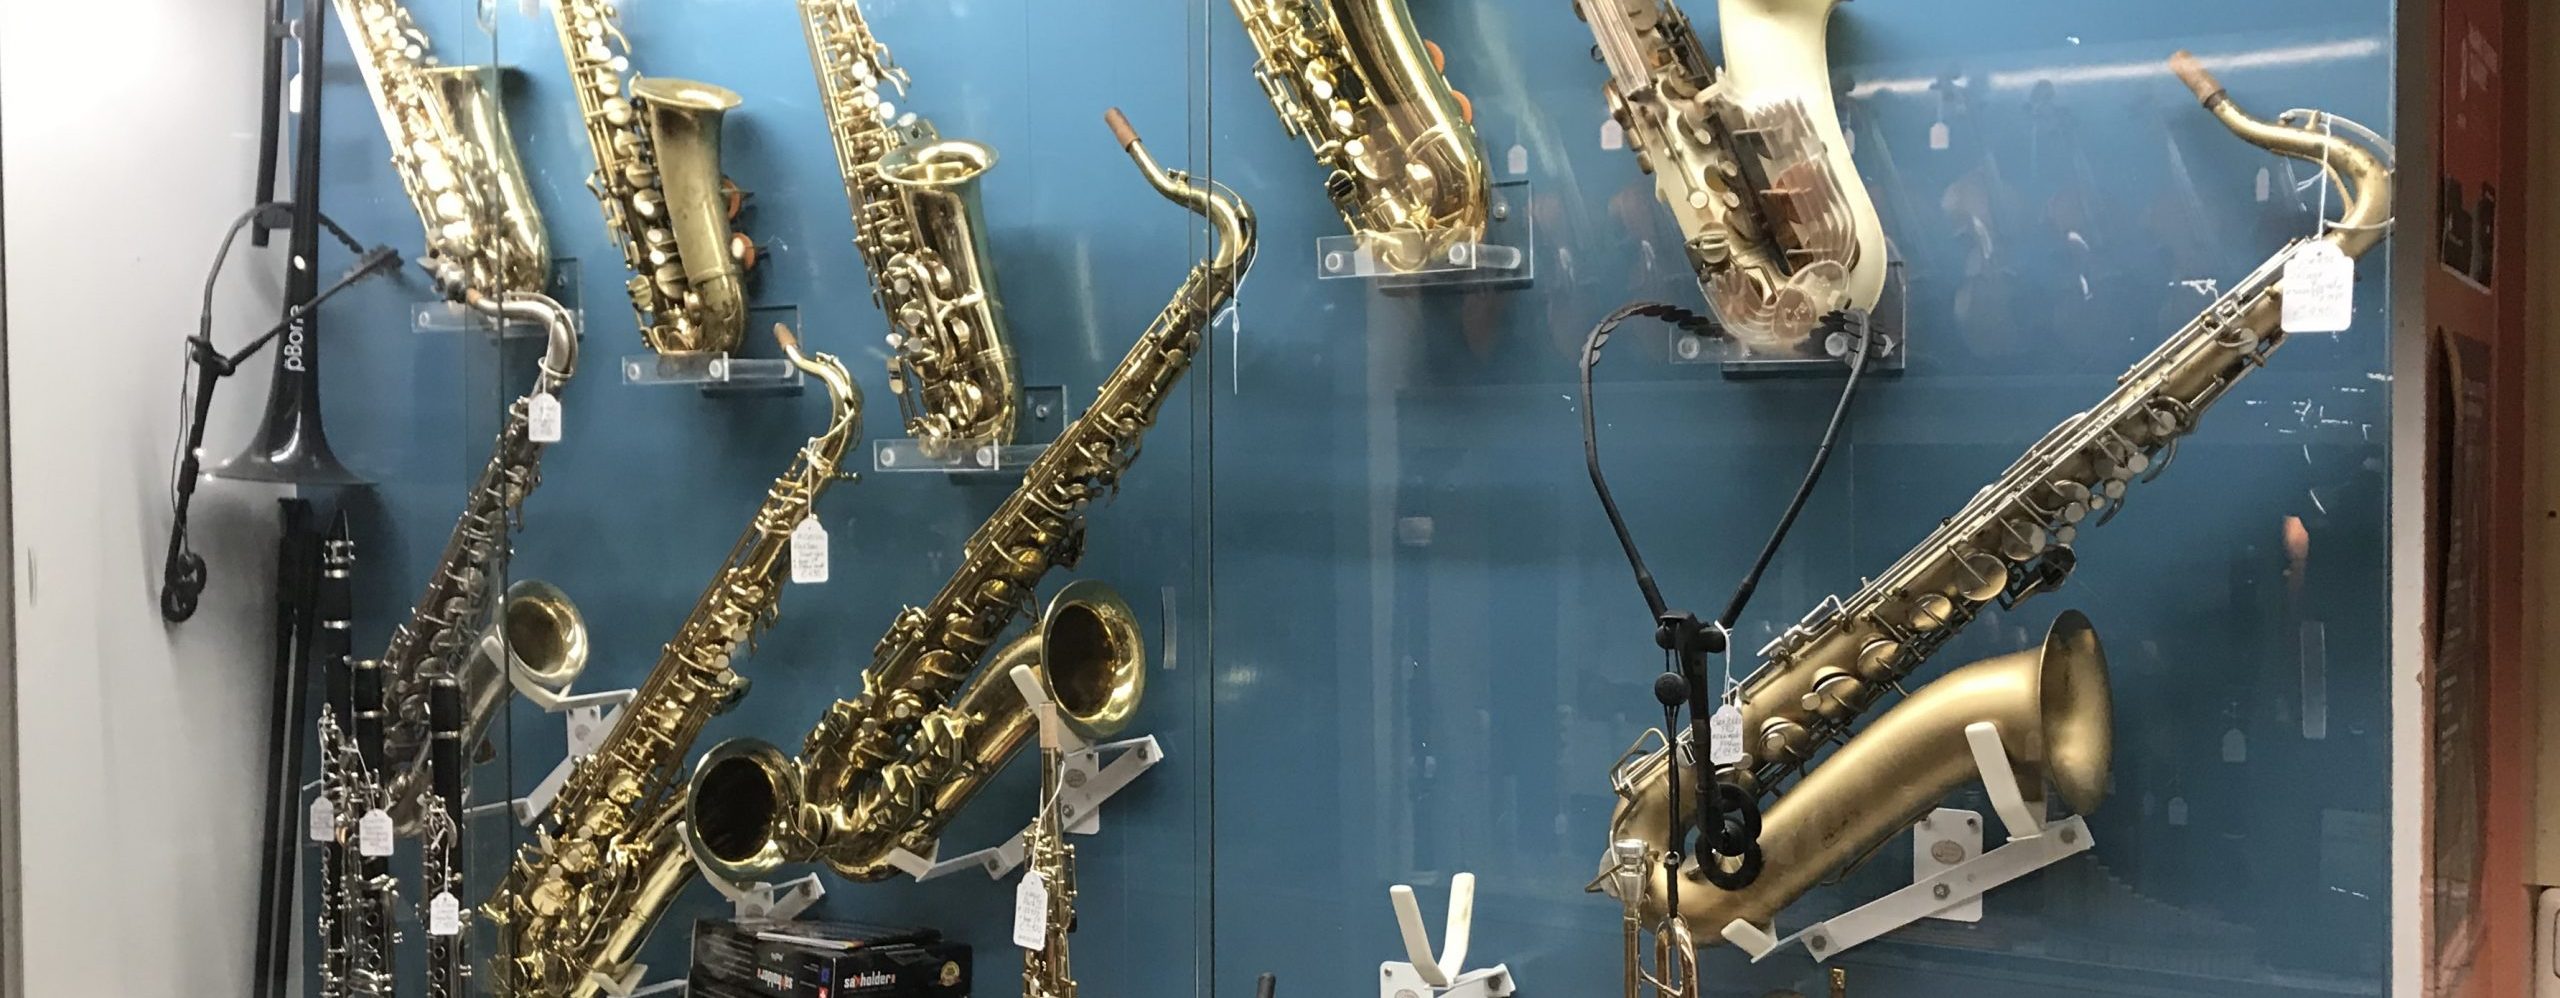 eiland realiteit barst Oudste muziekwinkel van Nederland dreigt te verdwijnen | Nieuw Amsterdams  Peil